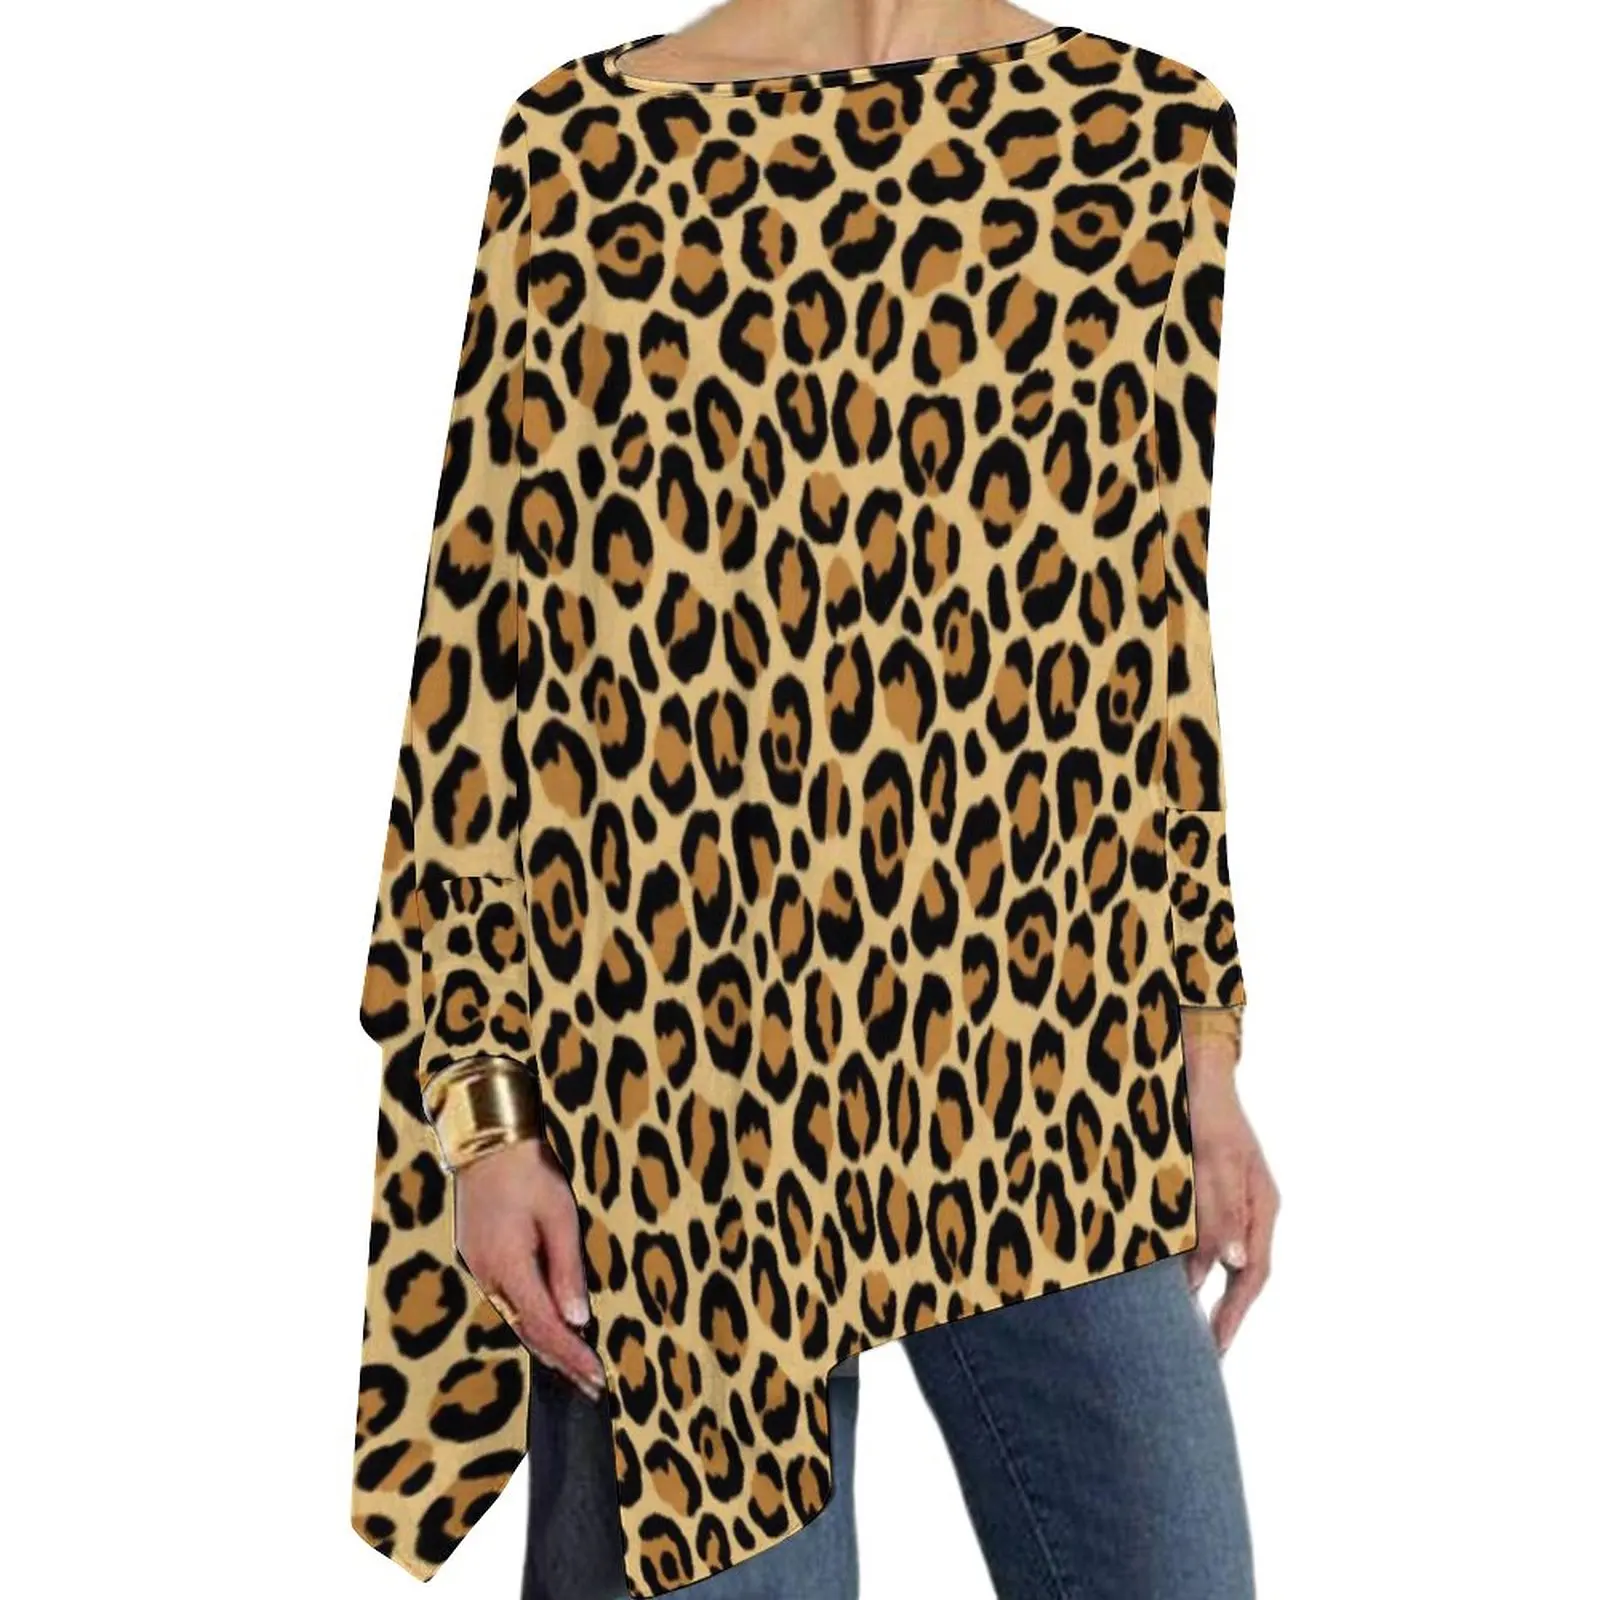 

Футболка женская с леопардовым принтом, классическая элегантная Весенняя рубашка с длинным рукавом, уличная одежда, большие размеры 6XL